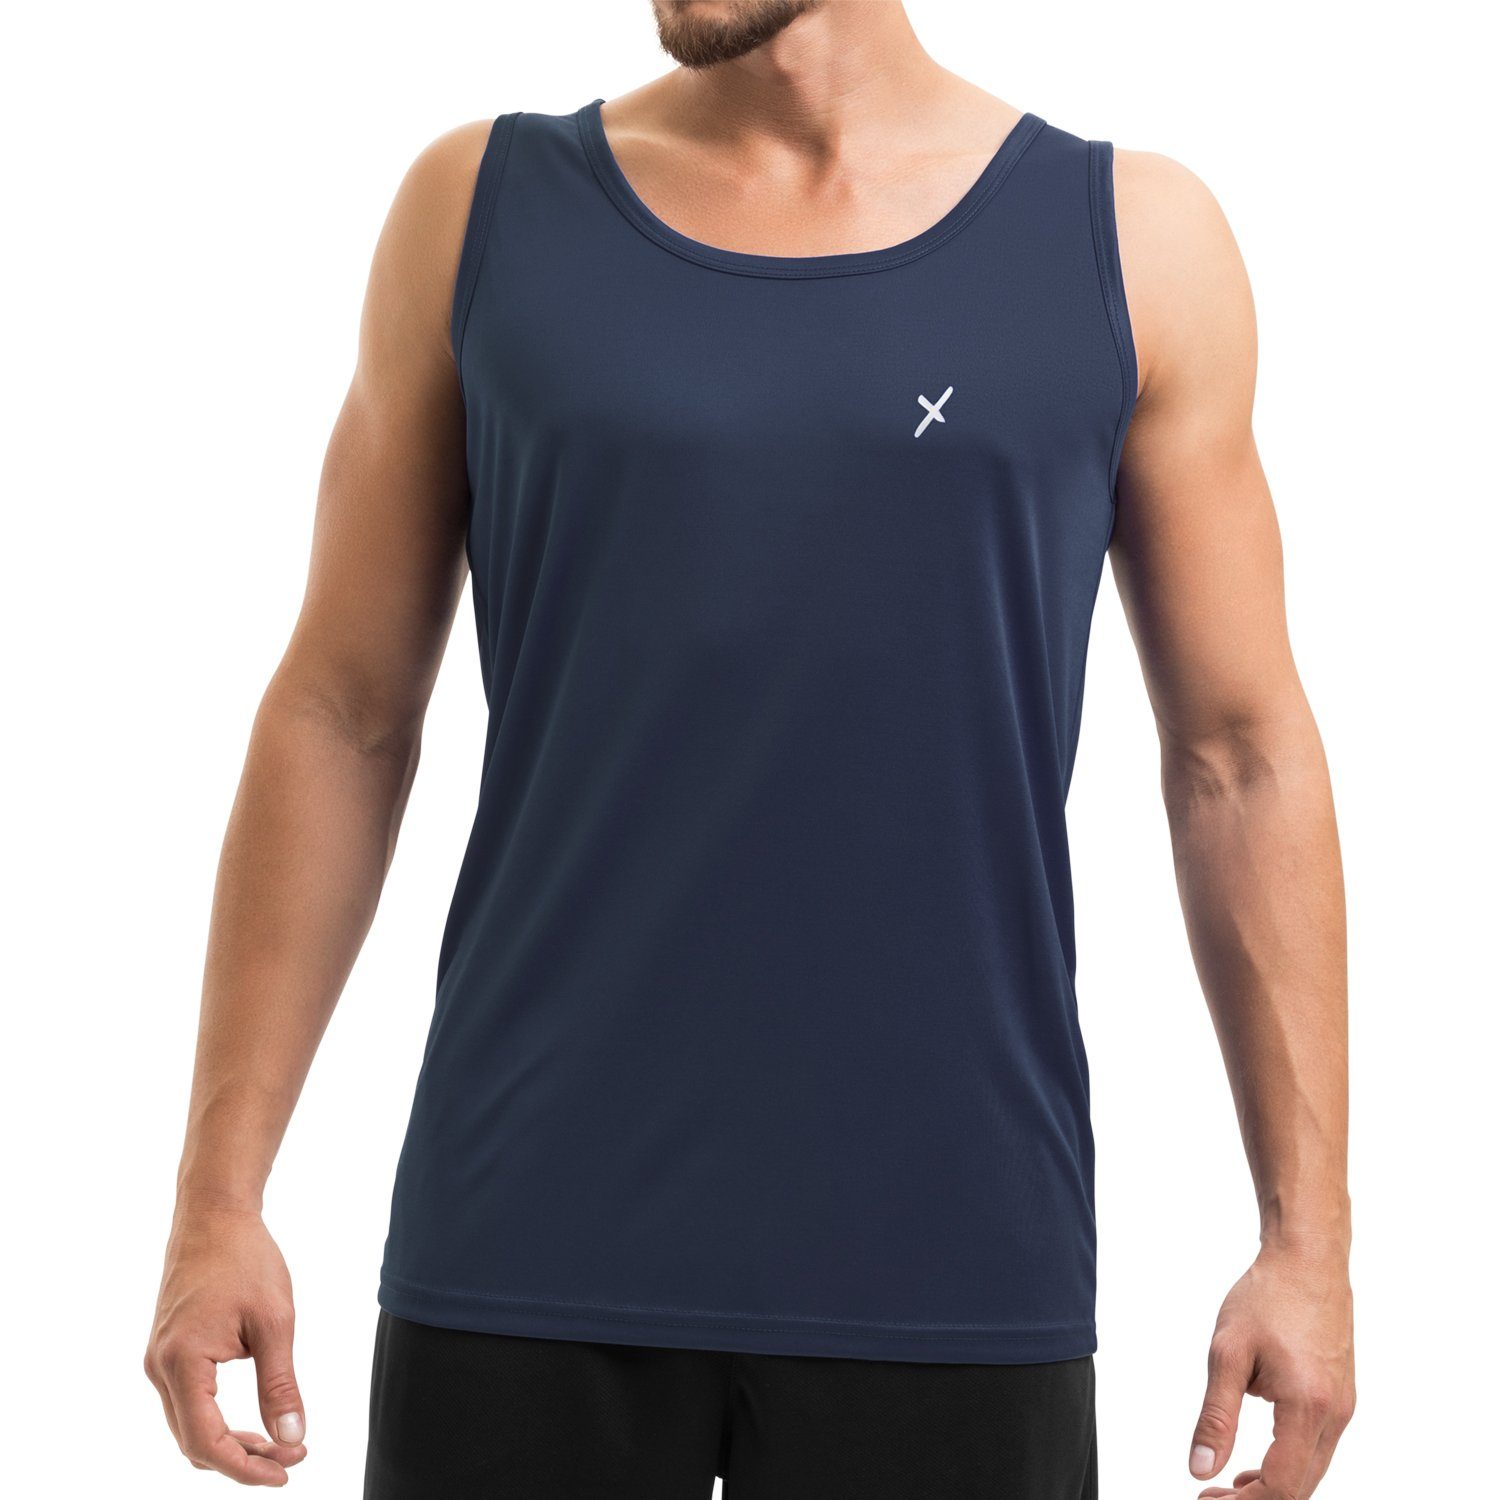 CFLEX Trainingsshirt Herren Tanktop Sportswear Collection Sport Fitness Shirt Navy